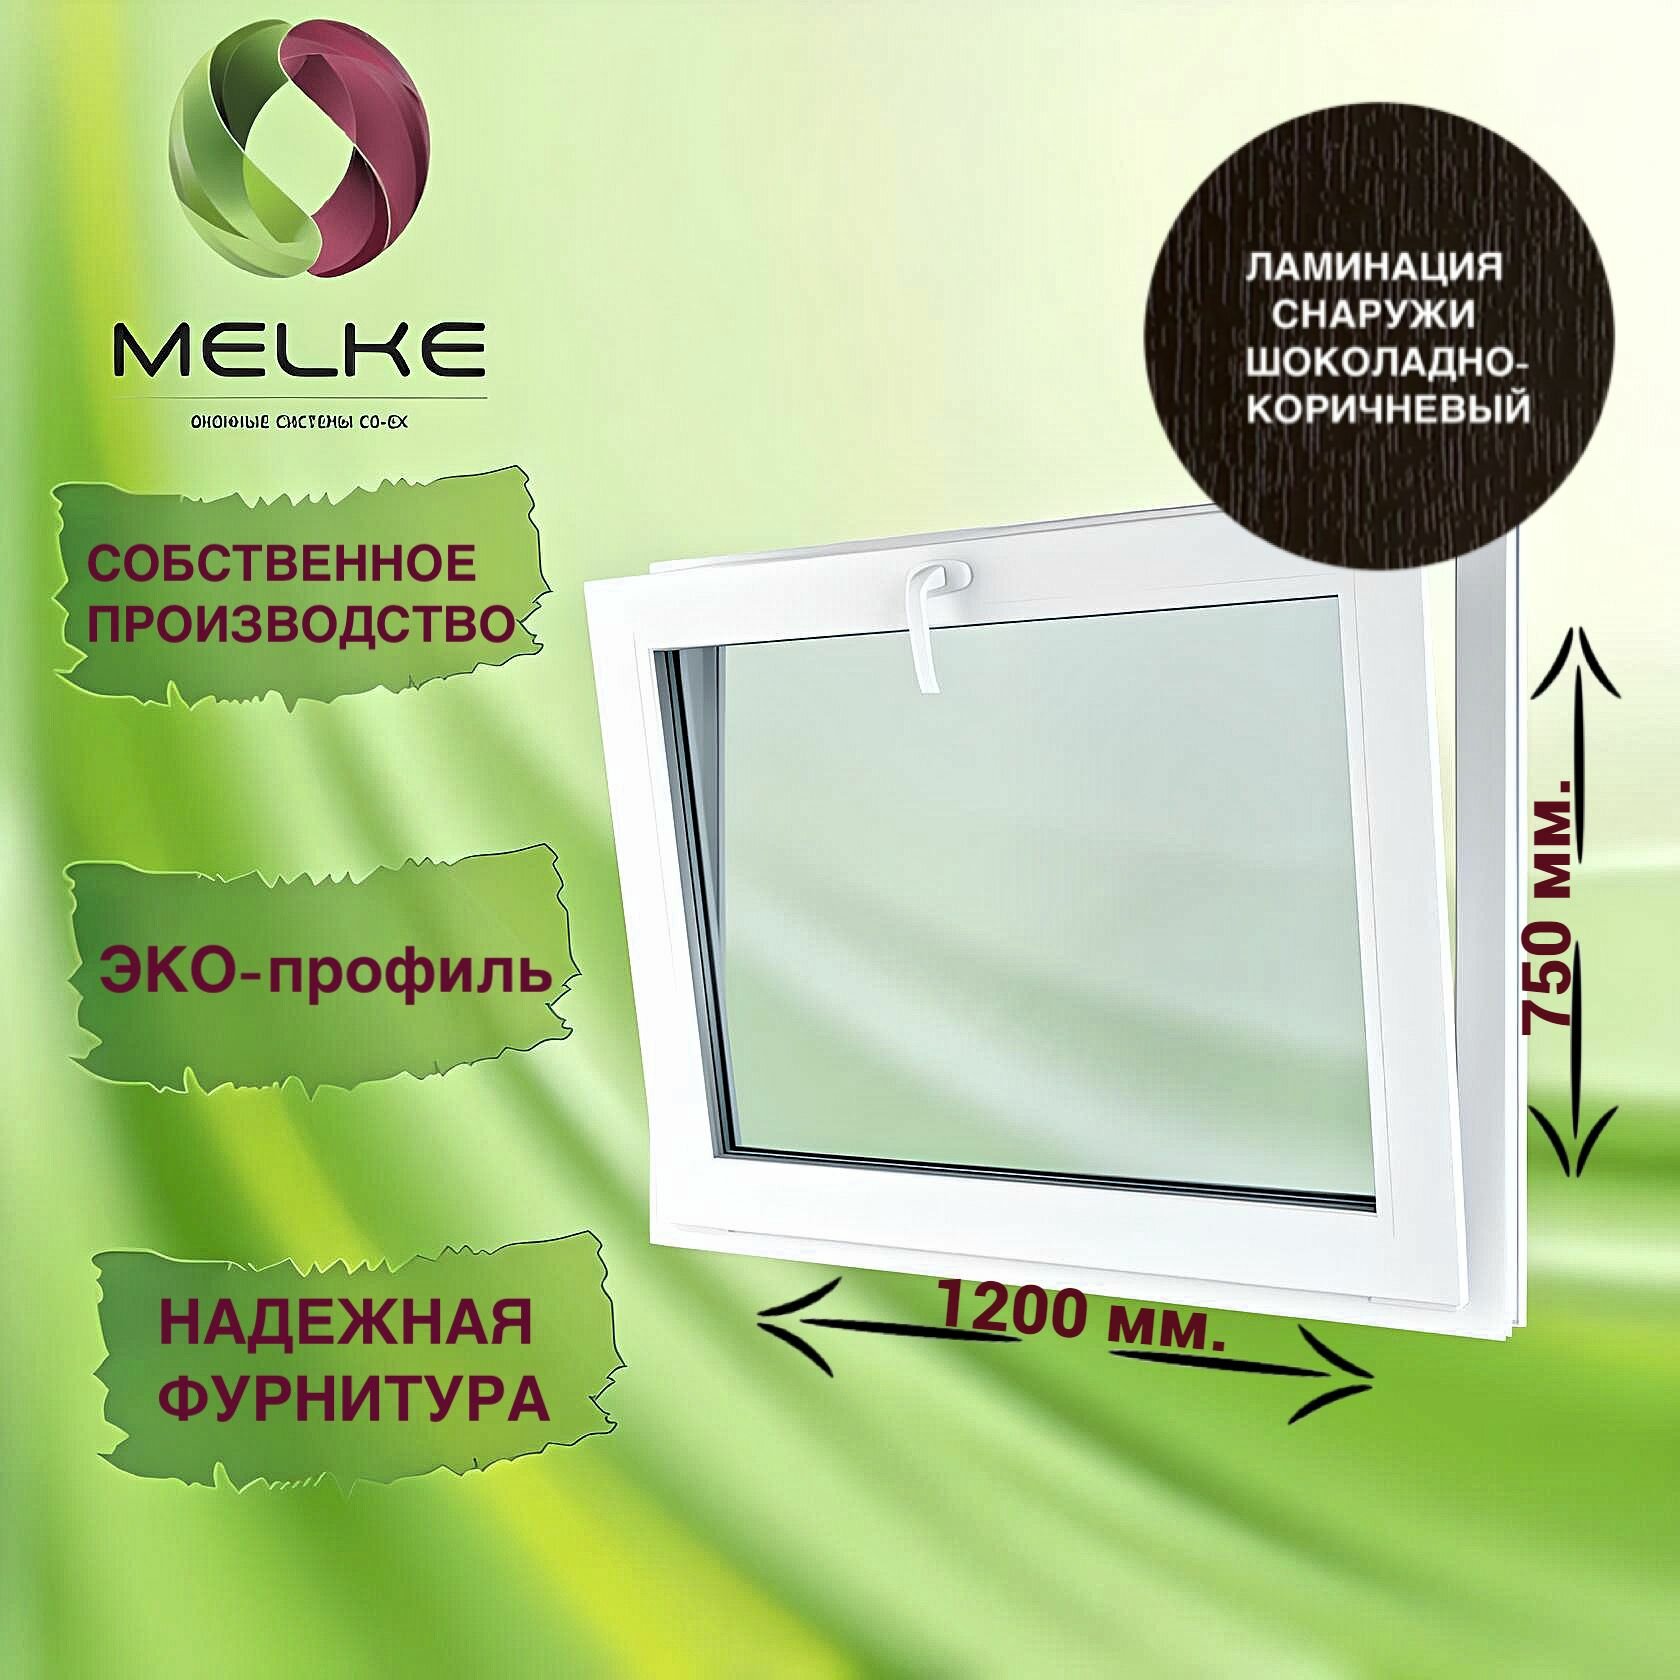 Окно с фрамужным открыванием 750 x 1200 мм, Melke 60, (Фурнитура FUTURUSS), цвет внешней ламинации Шоколадно-коричневый, 2-х камерный стеклопакет, 3 стекла.